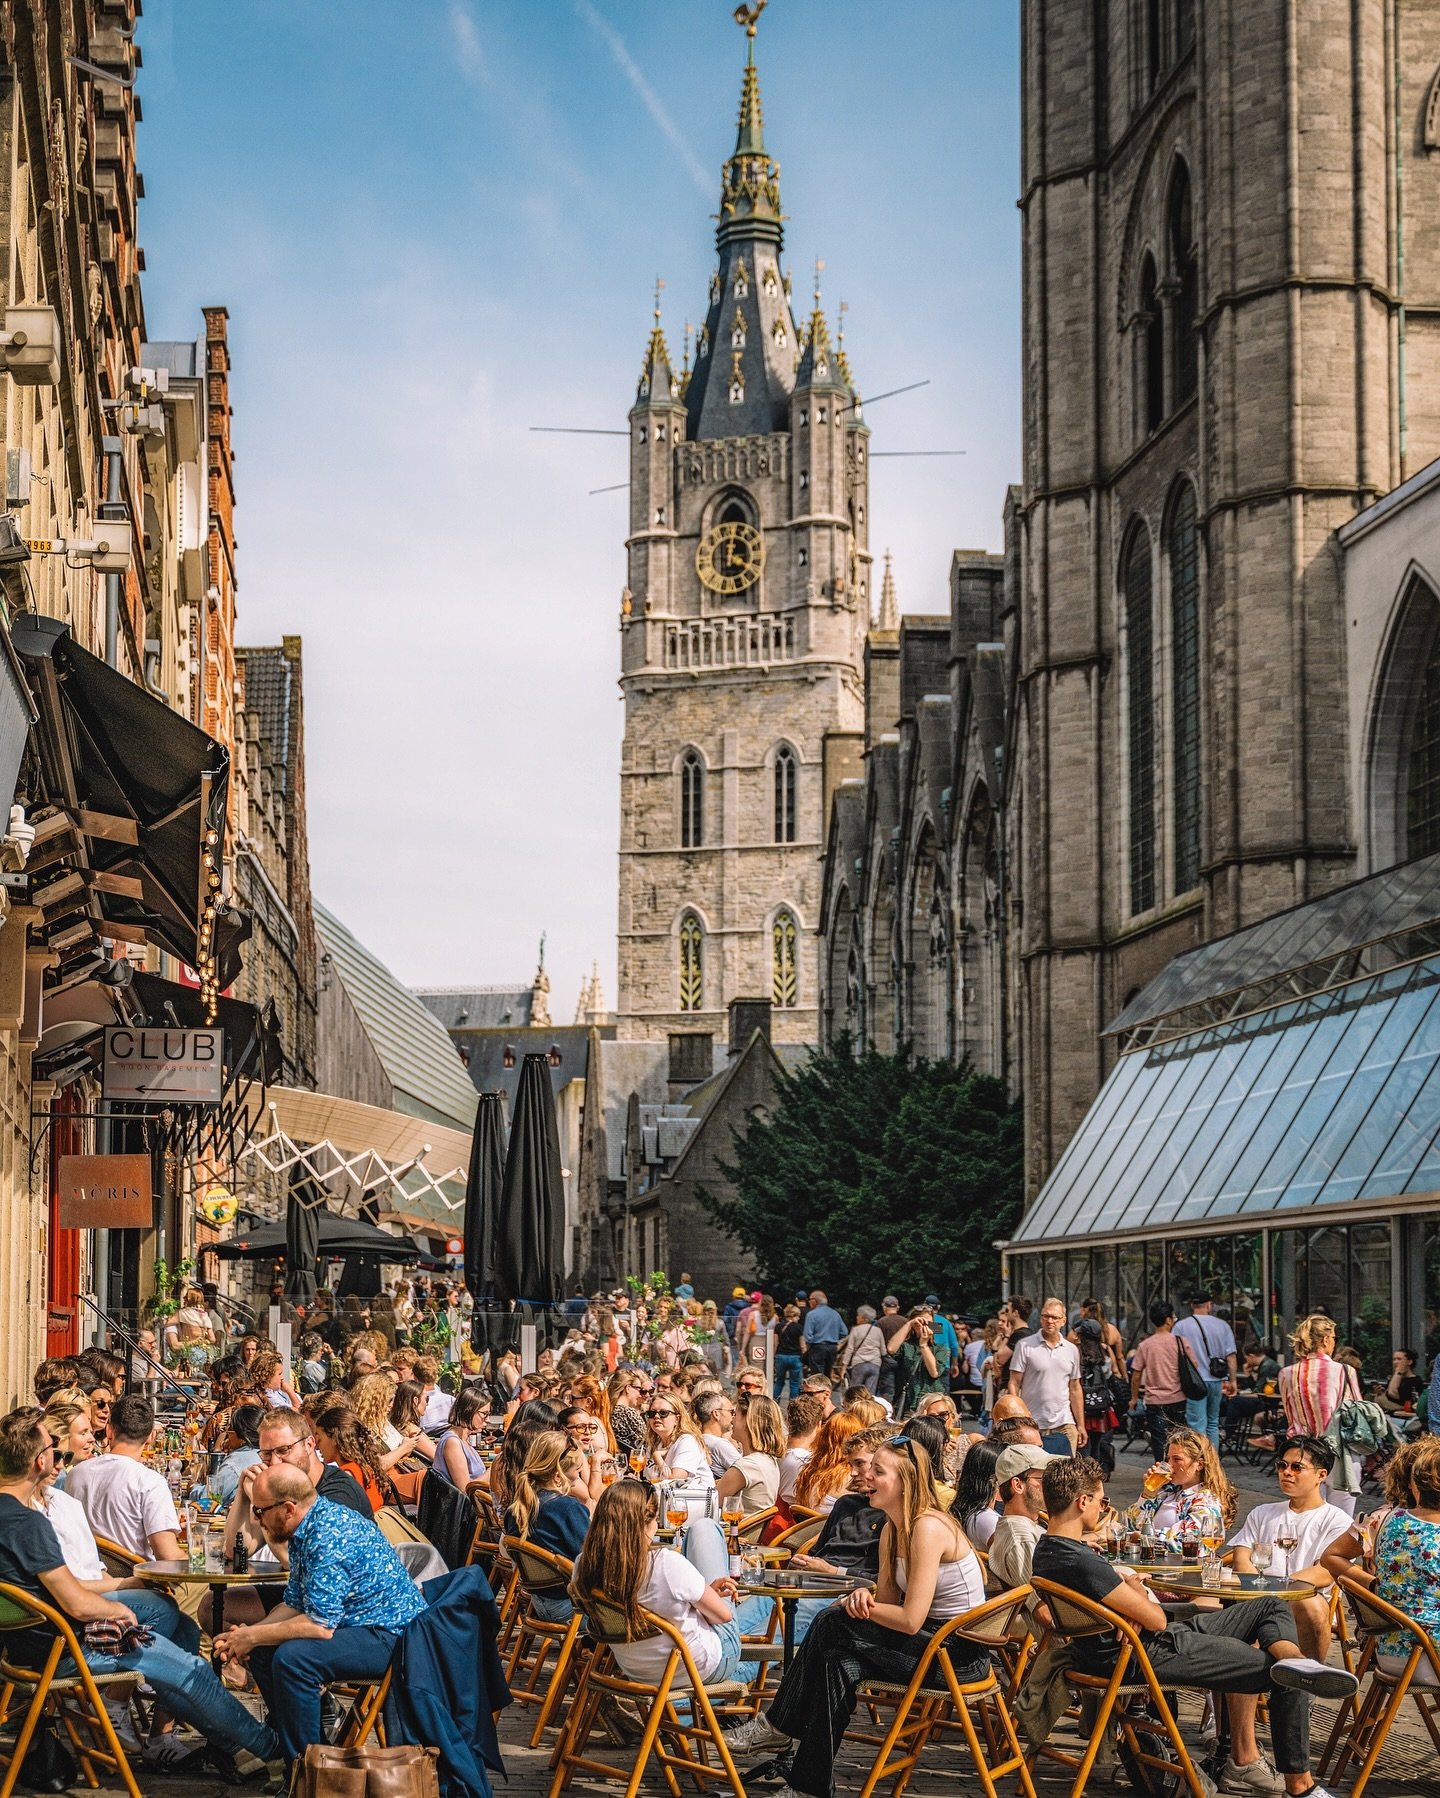 Hello les amis 😊⁣
⁣
[🇨🇵] Comme un air d&rsquo;&Eacute;t&eacute; dans les rues de Gand ! 😍⁣
⁣
[🇺🇸] Summer vibes in Gent streets! 😍⁣
⁣
#Gand #Gent #Ghent #Flanders #VisitFlanders #VisitGent #EmbracingOpenness #Belgium